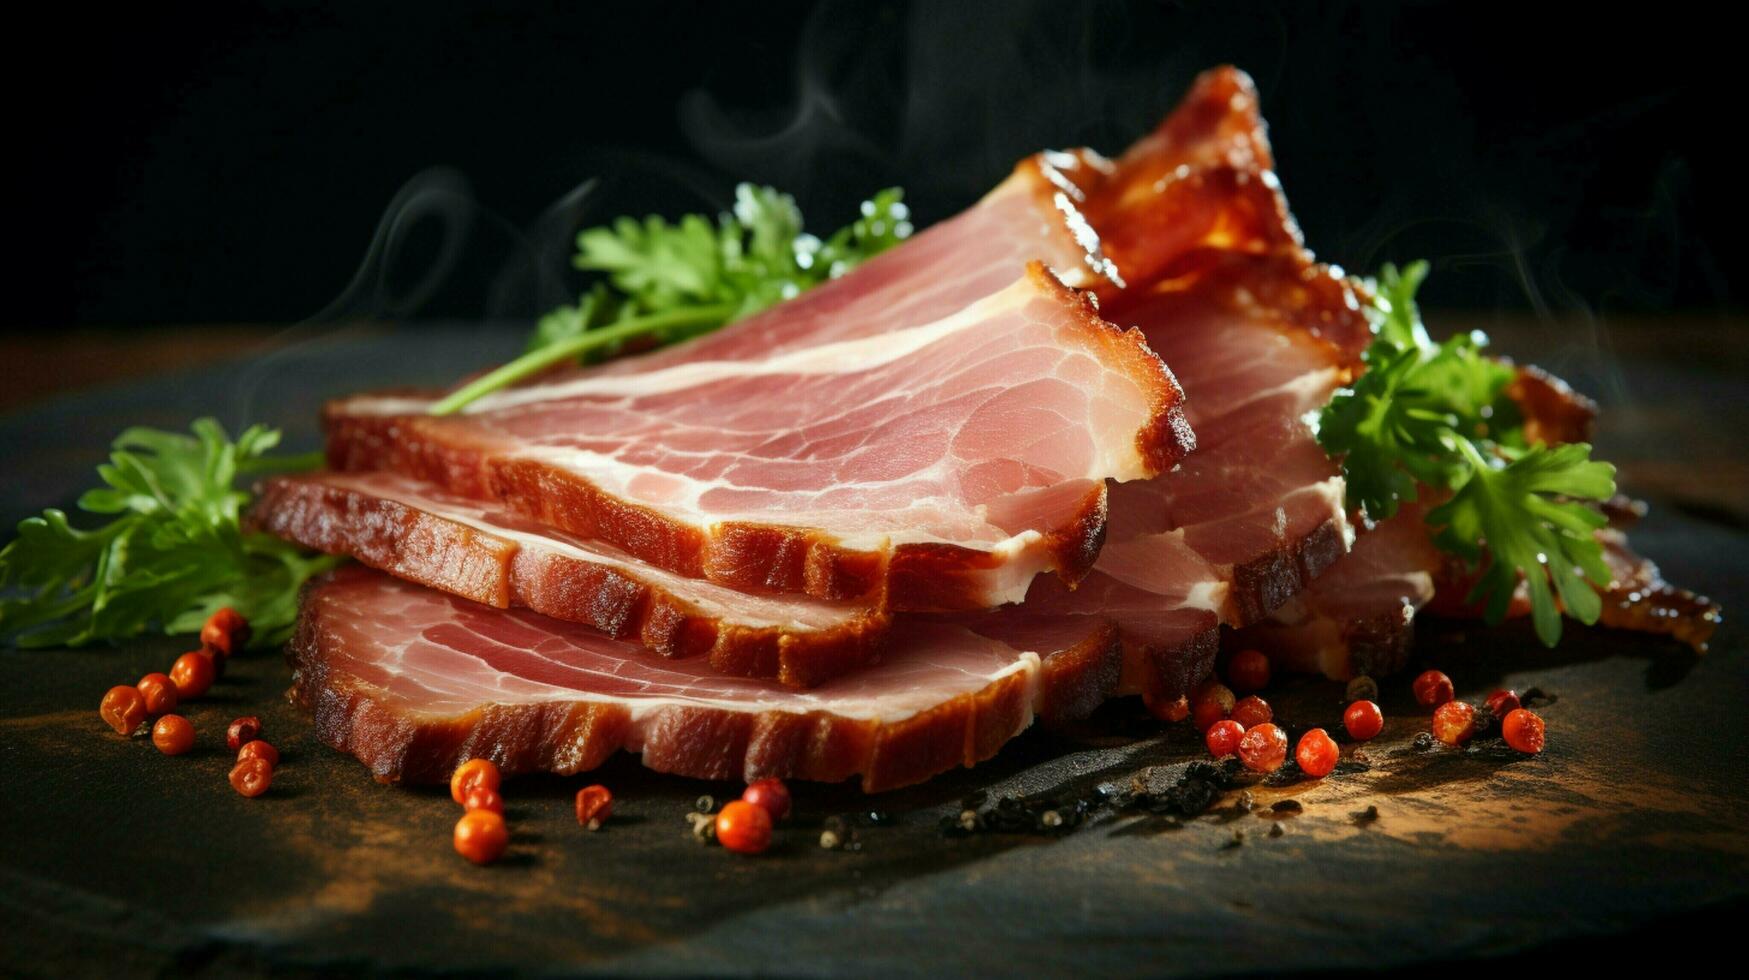 gerookt varkensvlees plak fijnproever delicatessen vers en ongezondheid foto